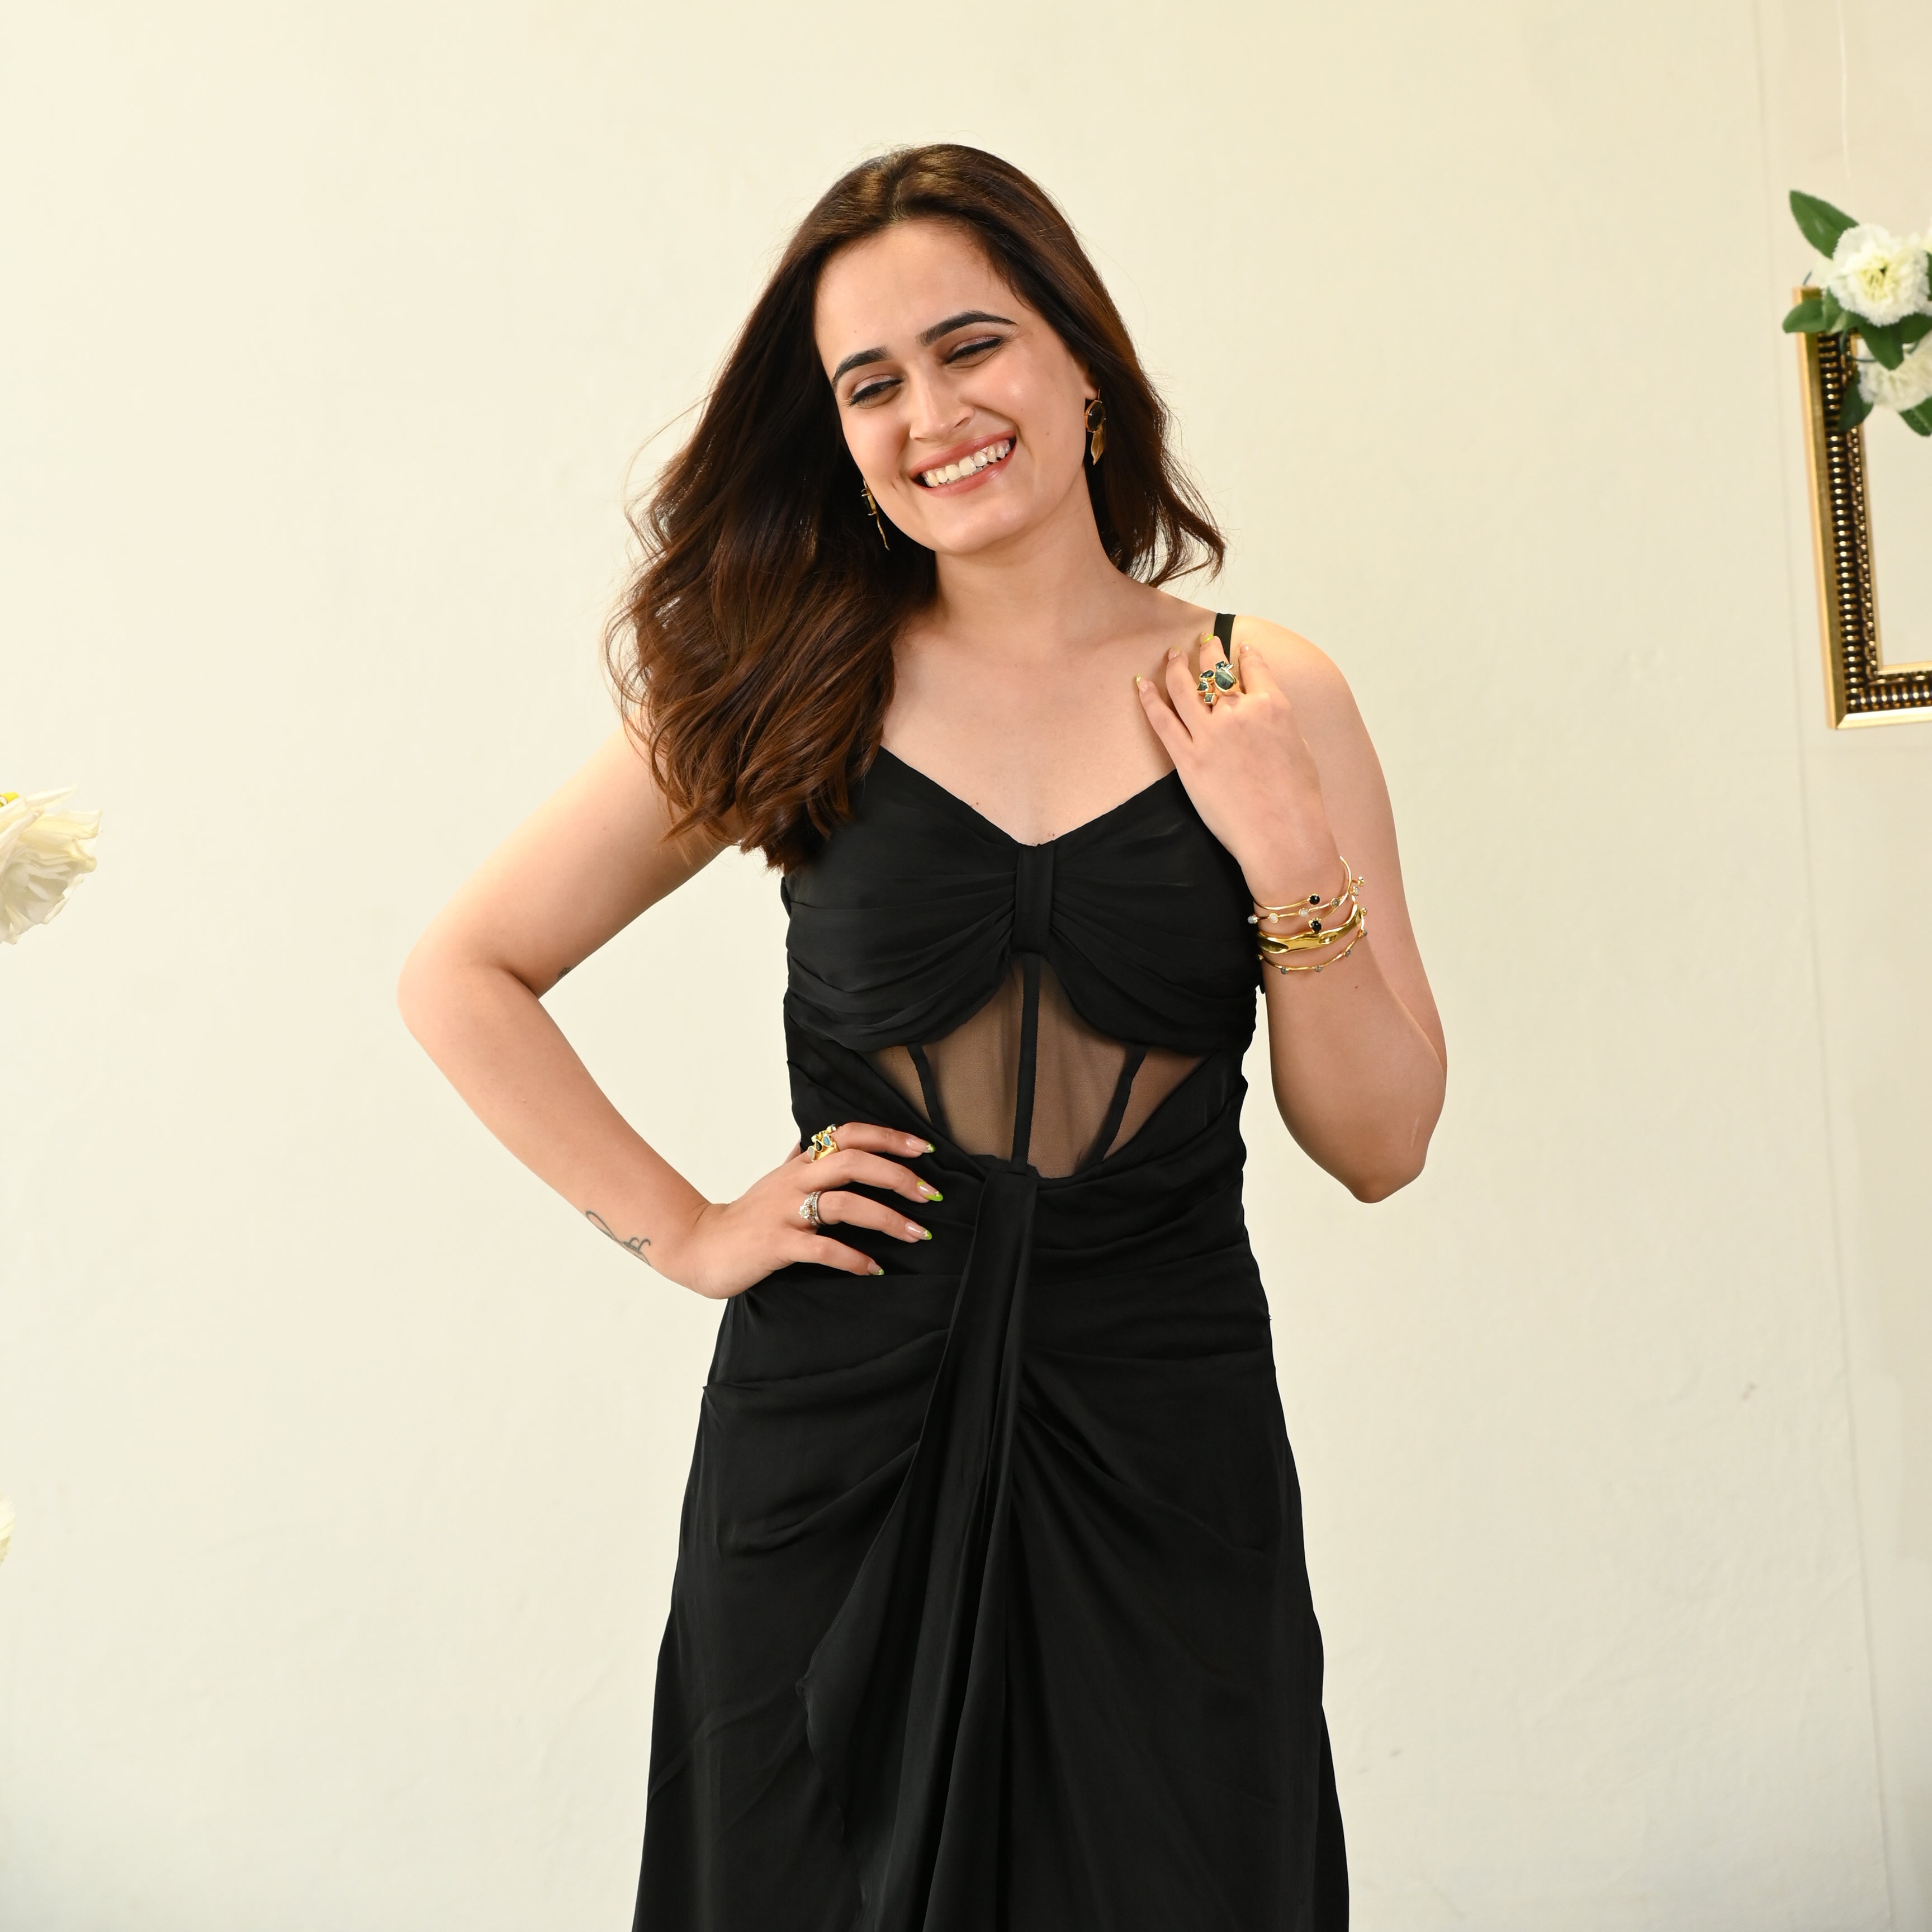 Black Sleeveless Dress for Women Online